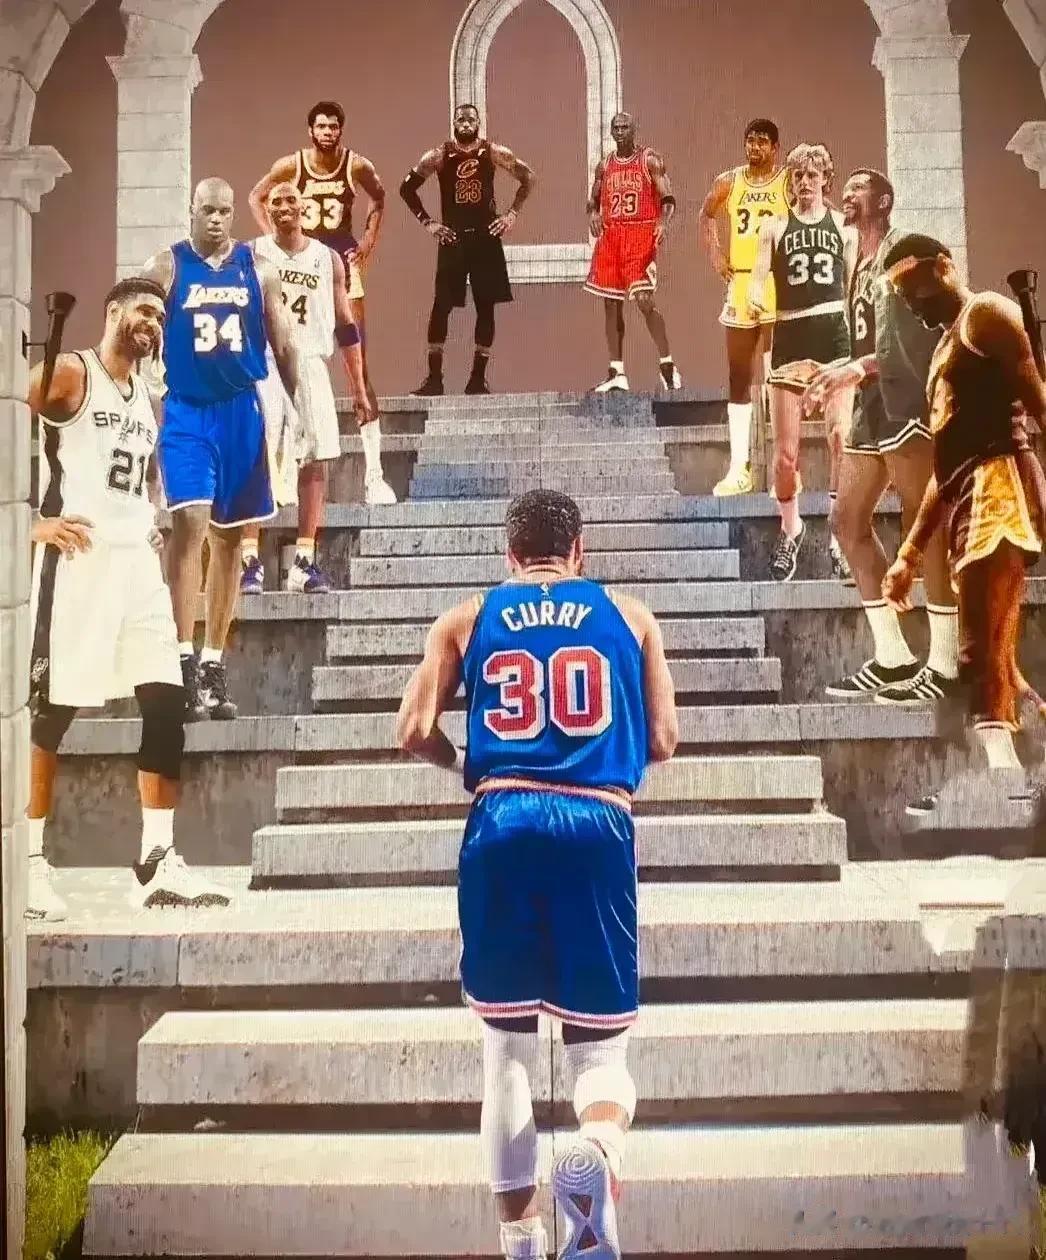 这张图非常中肯！

乔丹代表NBA历史第一人，最伟大的篮球巨星，球品没的说，人品